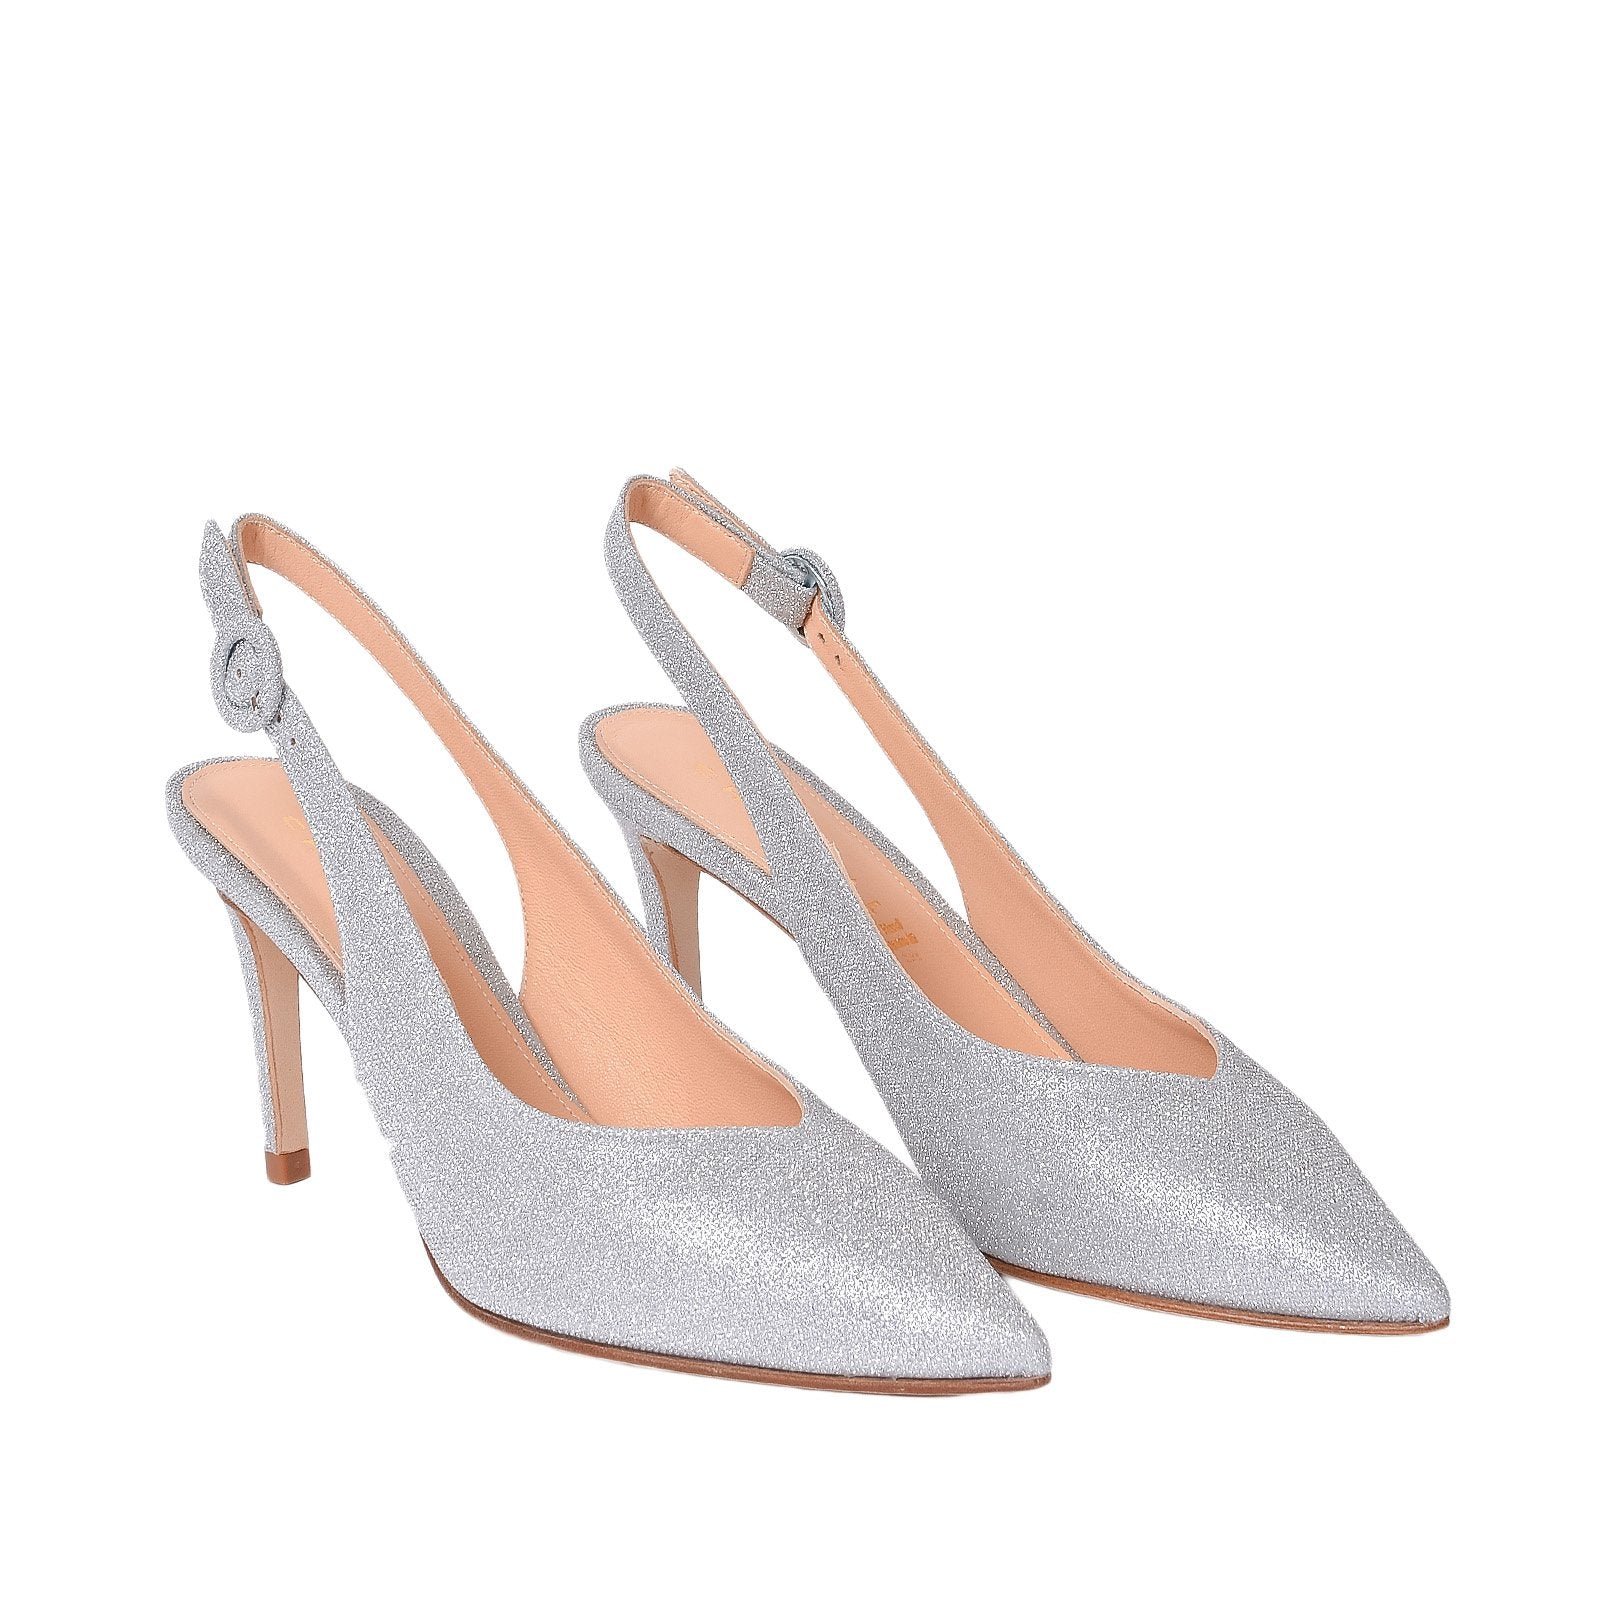 Jolanda Sling Back Pumps In Silver Glitter Heels 1038/Silver - 2